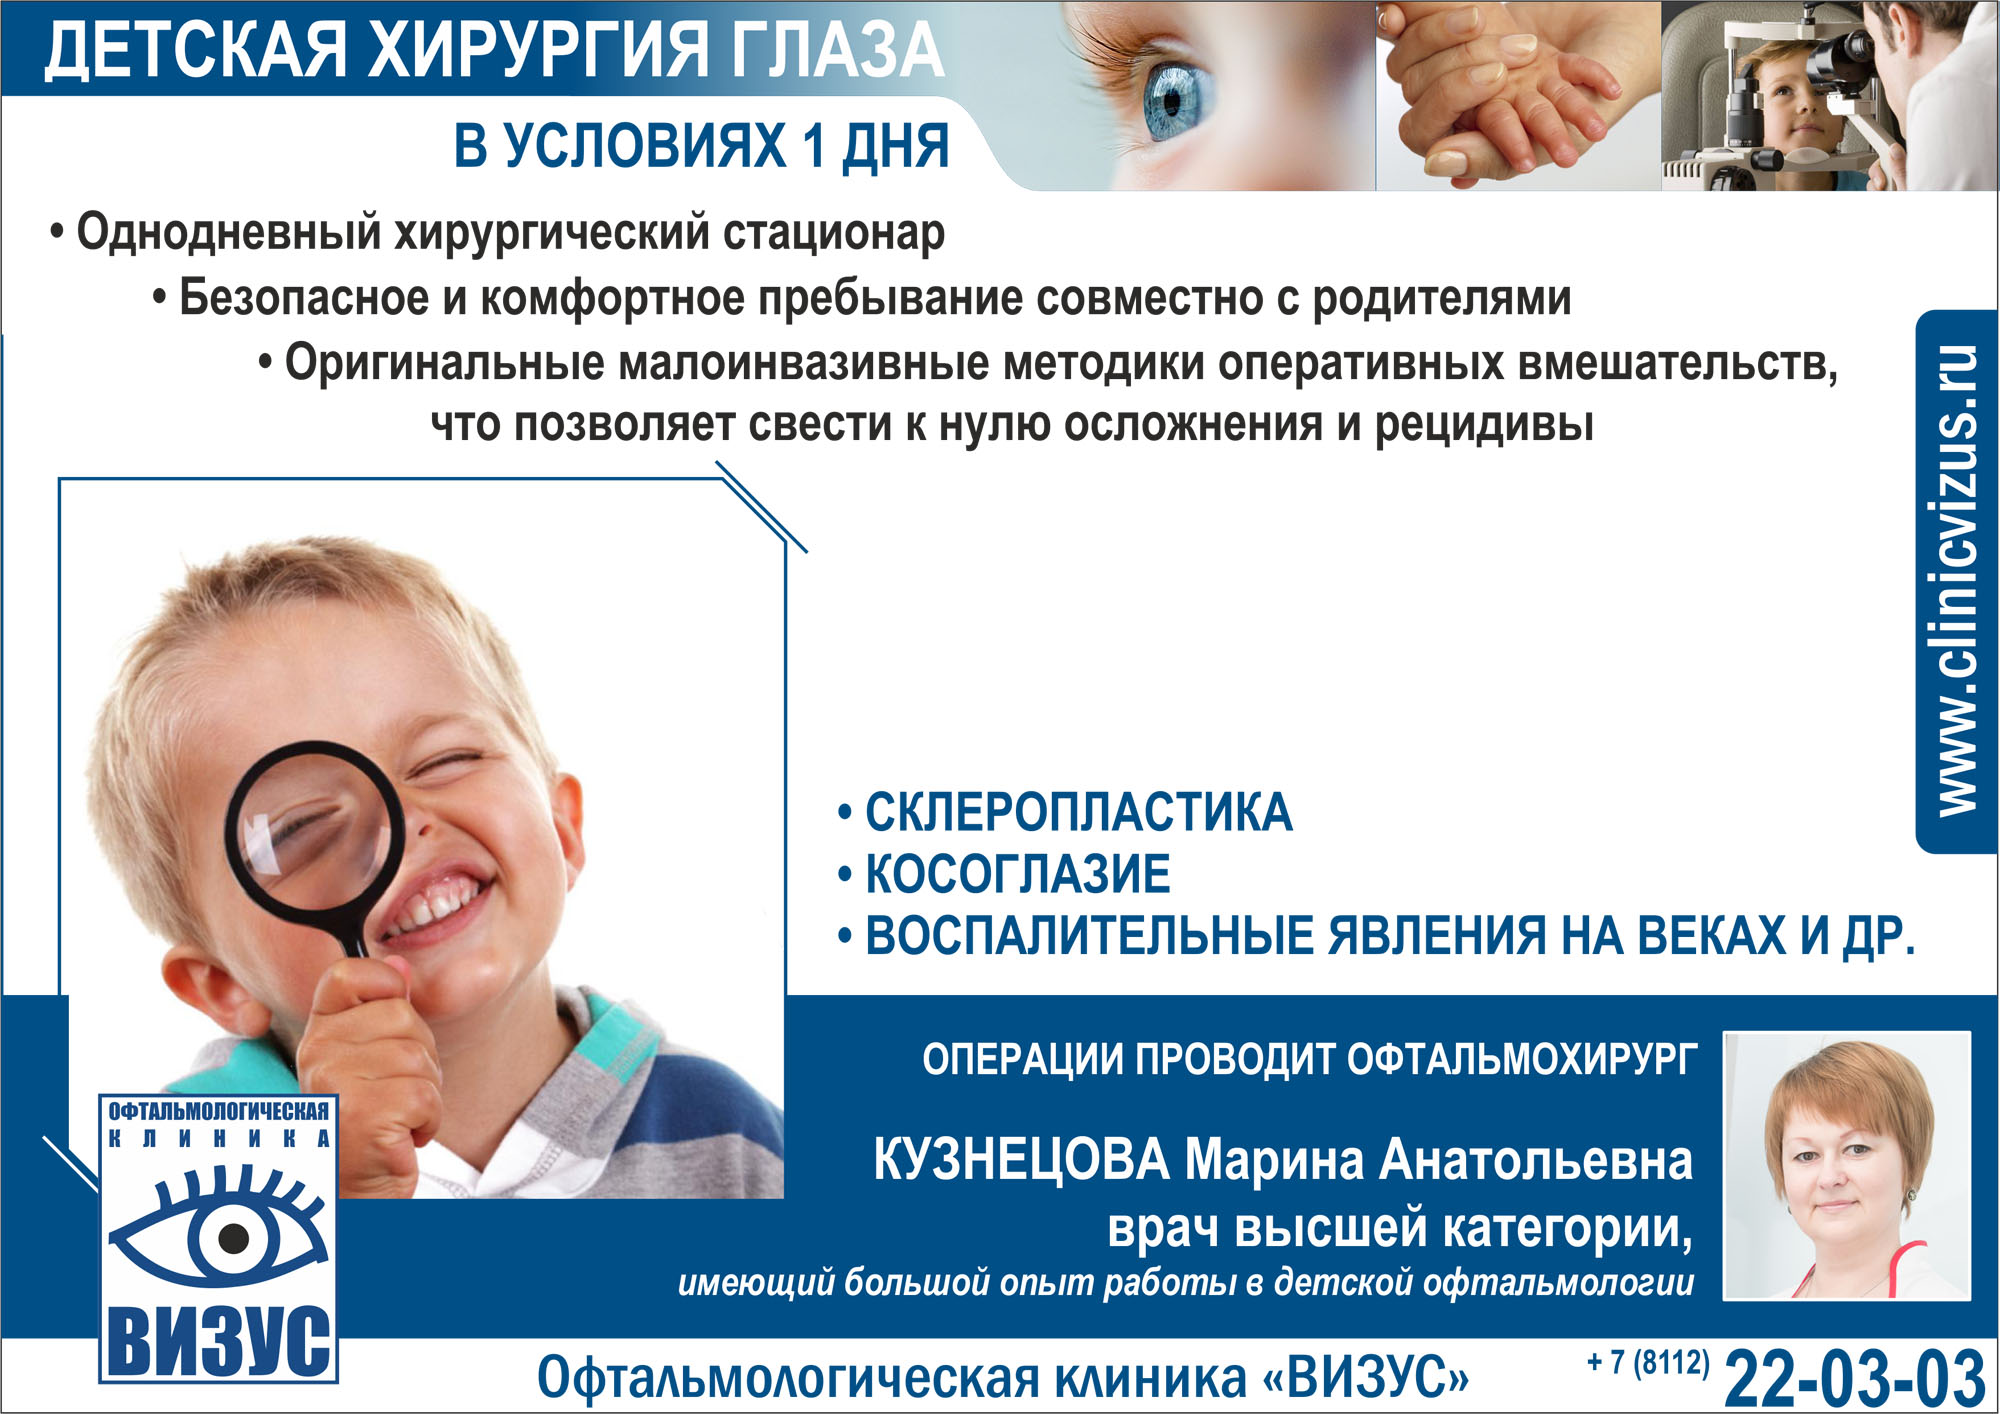 Офтальмологическая клиника «Визус» в Пскове открывает «детский однодневный хирургический стационар»